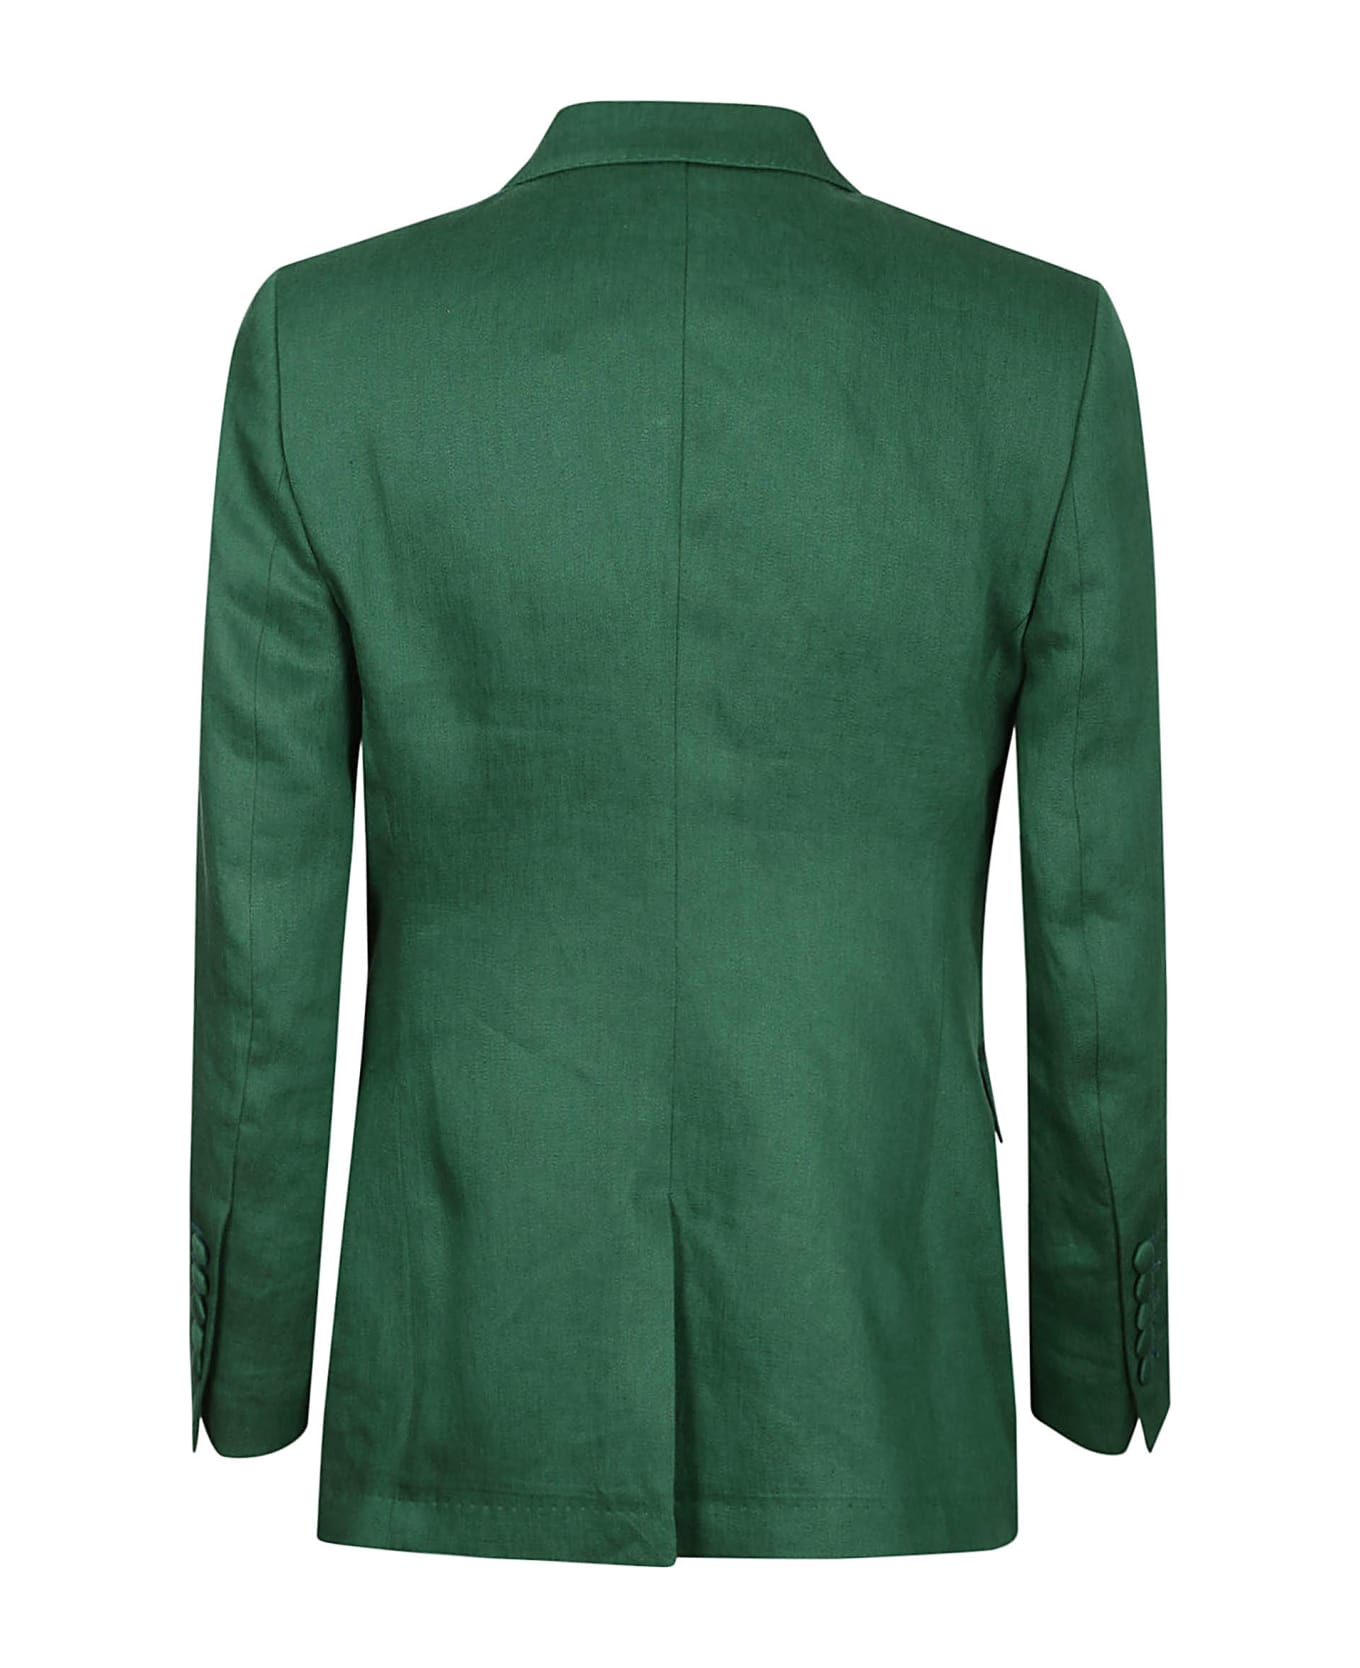 Saulina Milano Jacket - Green